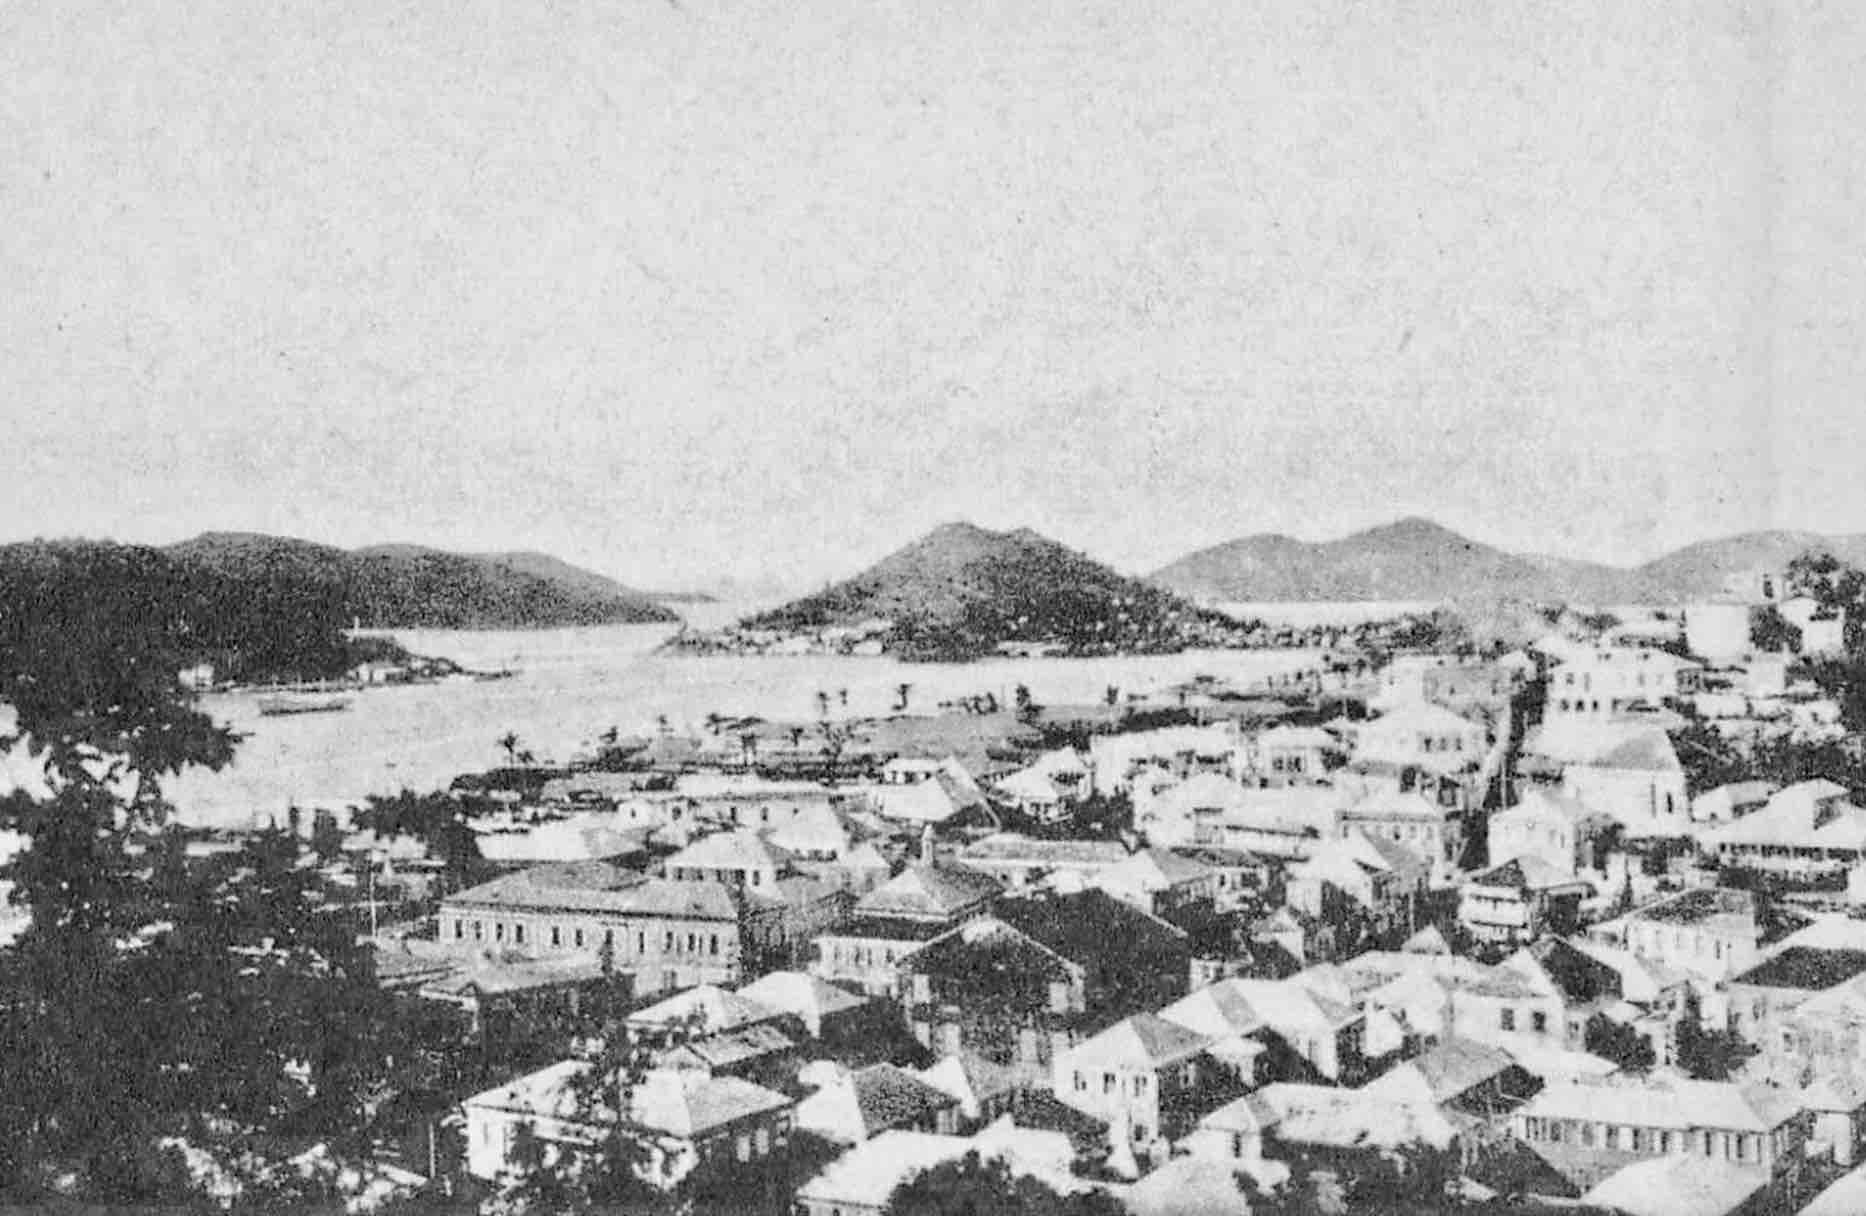 St Thomas, US Virgin islands in 1921